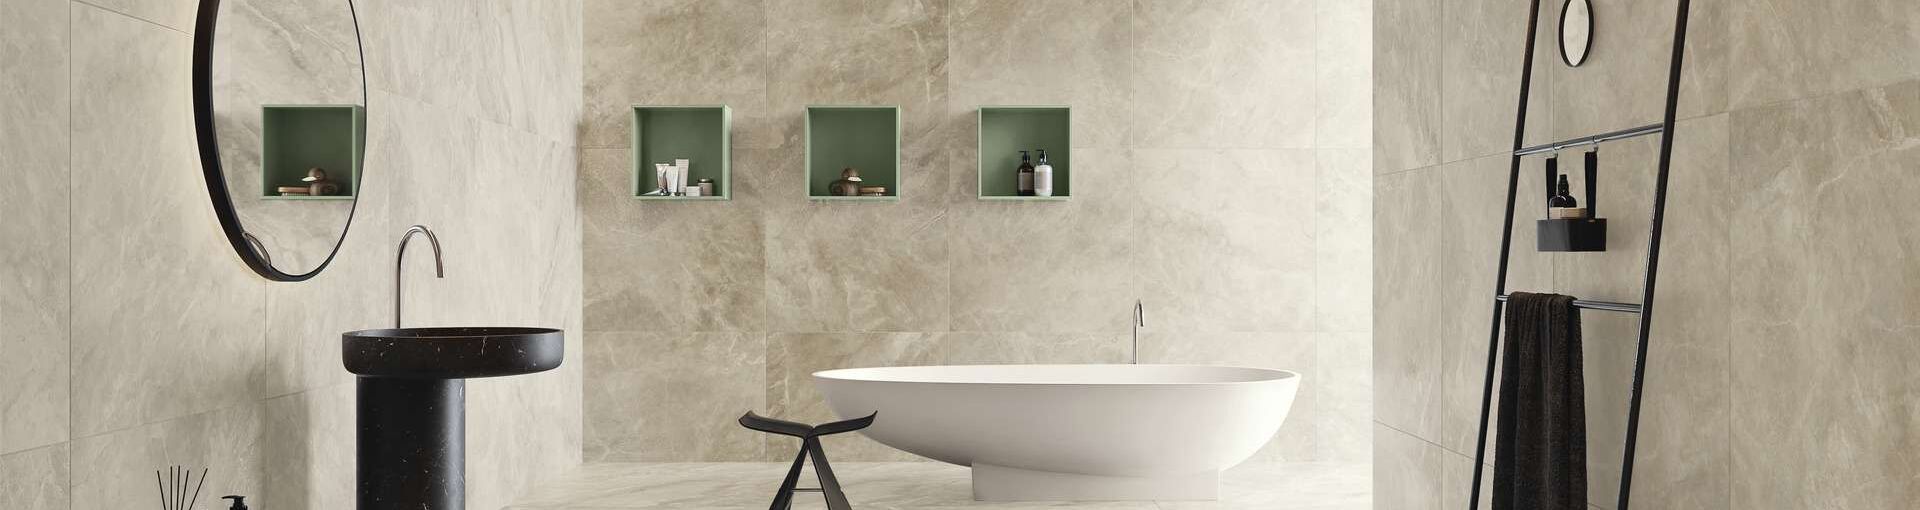 Modern gestaltetes Bad mit gleicher Fliesen Optik für Fußboden und Wand.